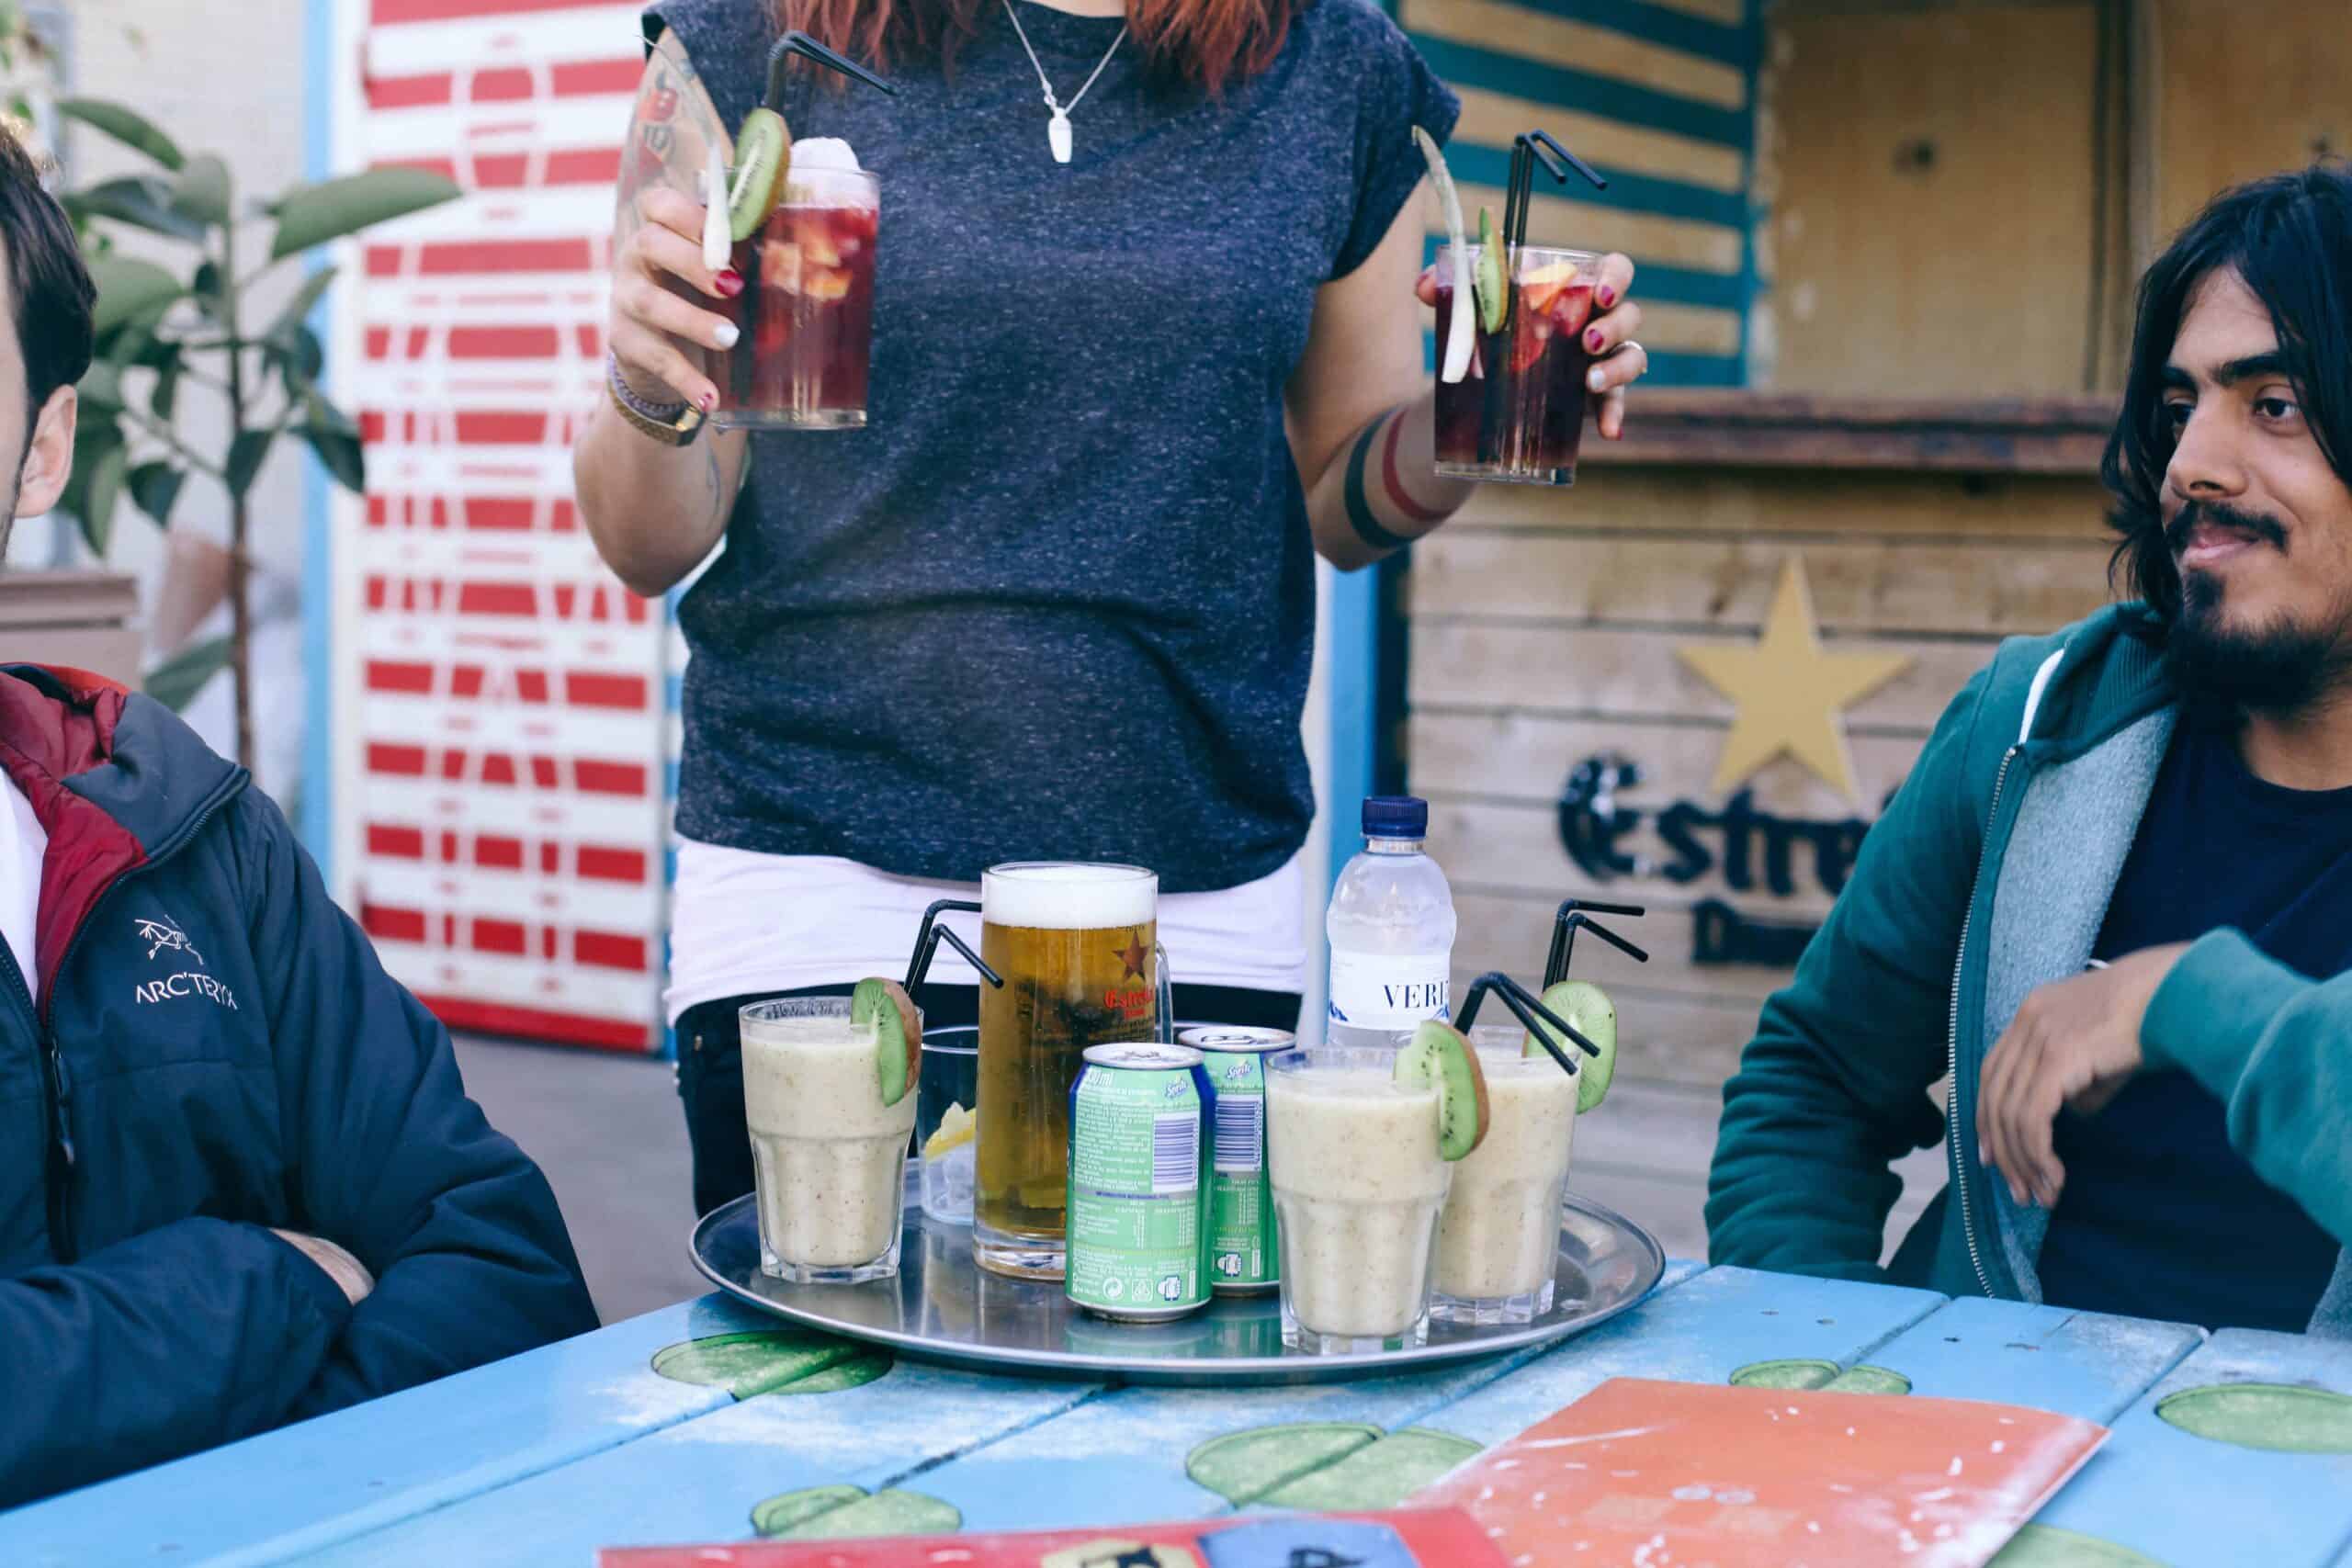 A woman serves drinks at a beach café in Barcelona, Spain